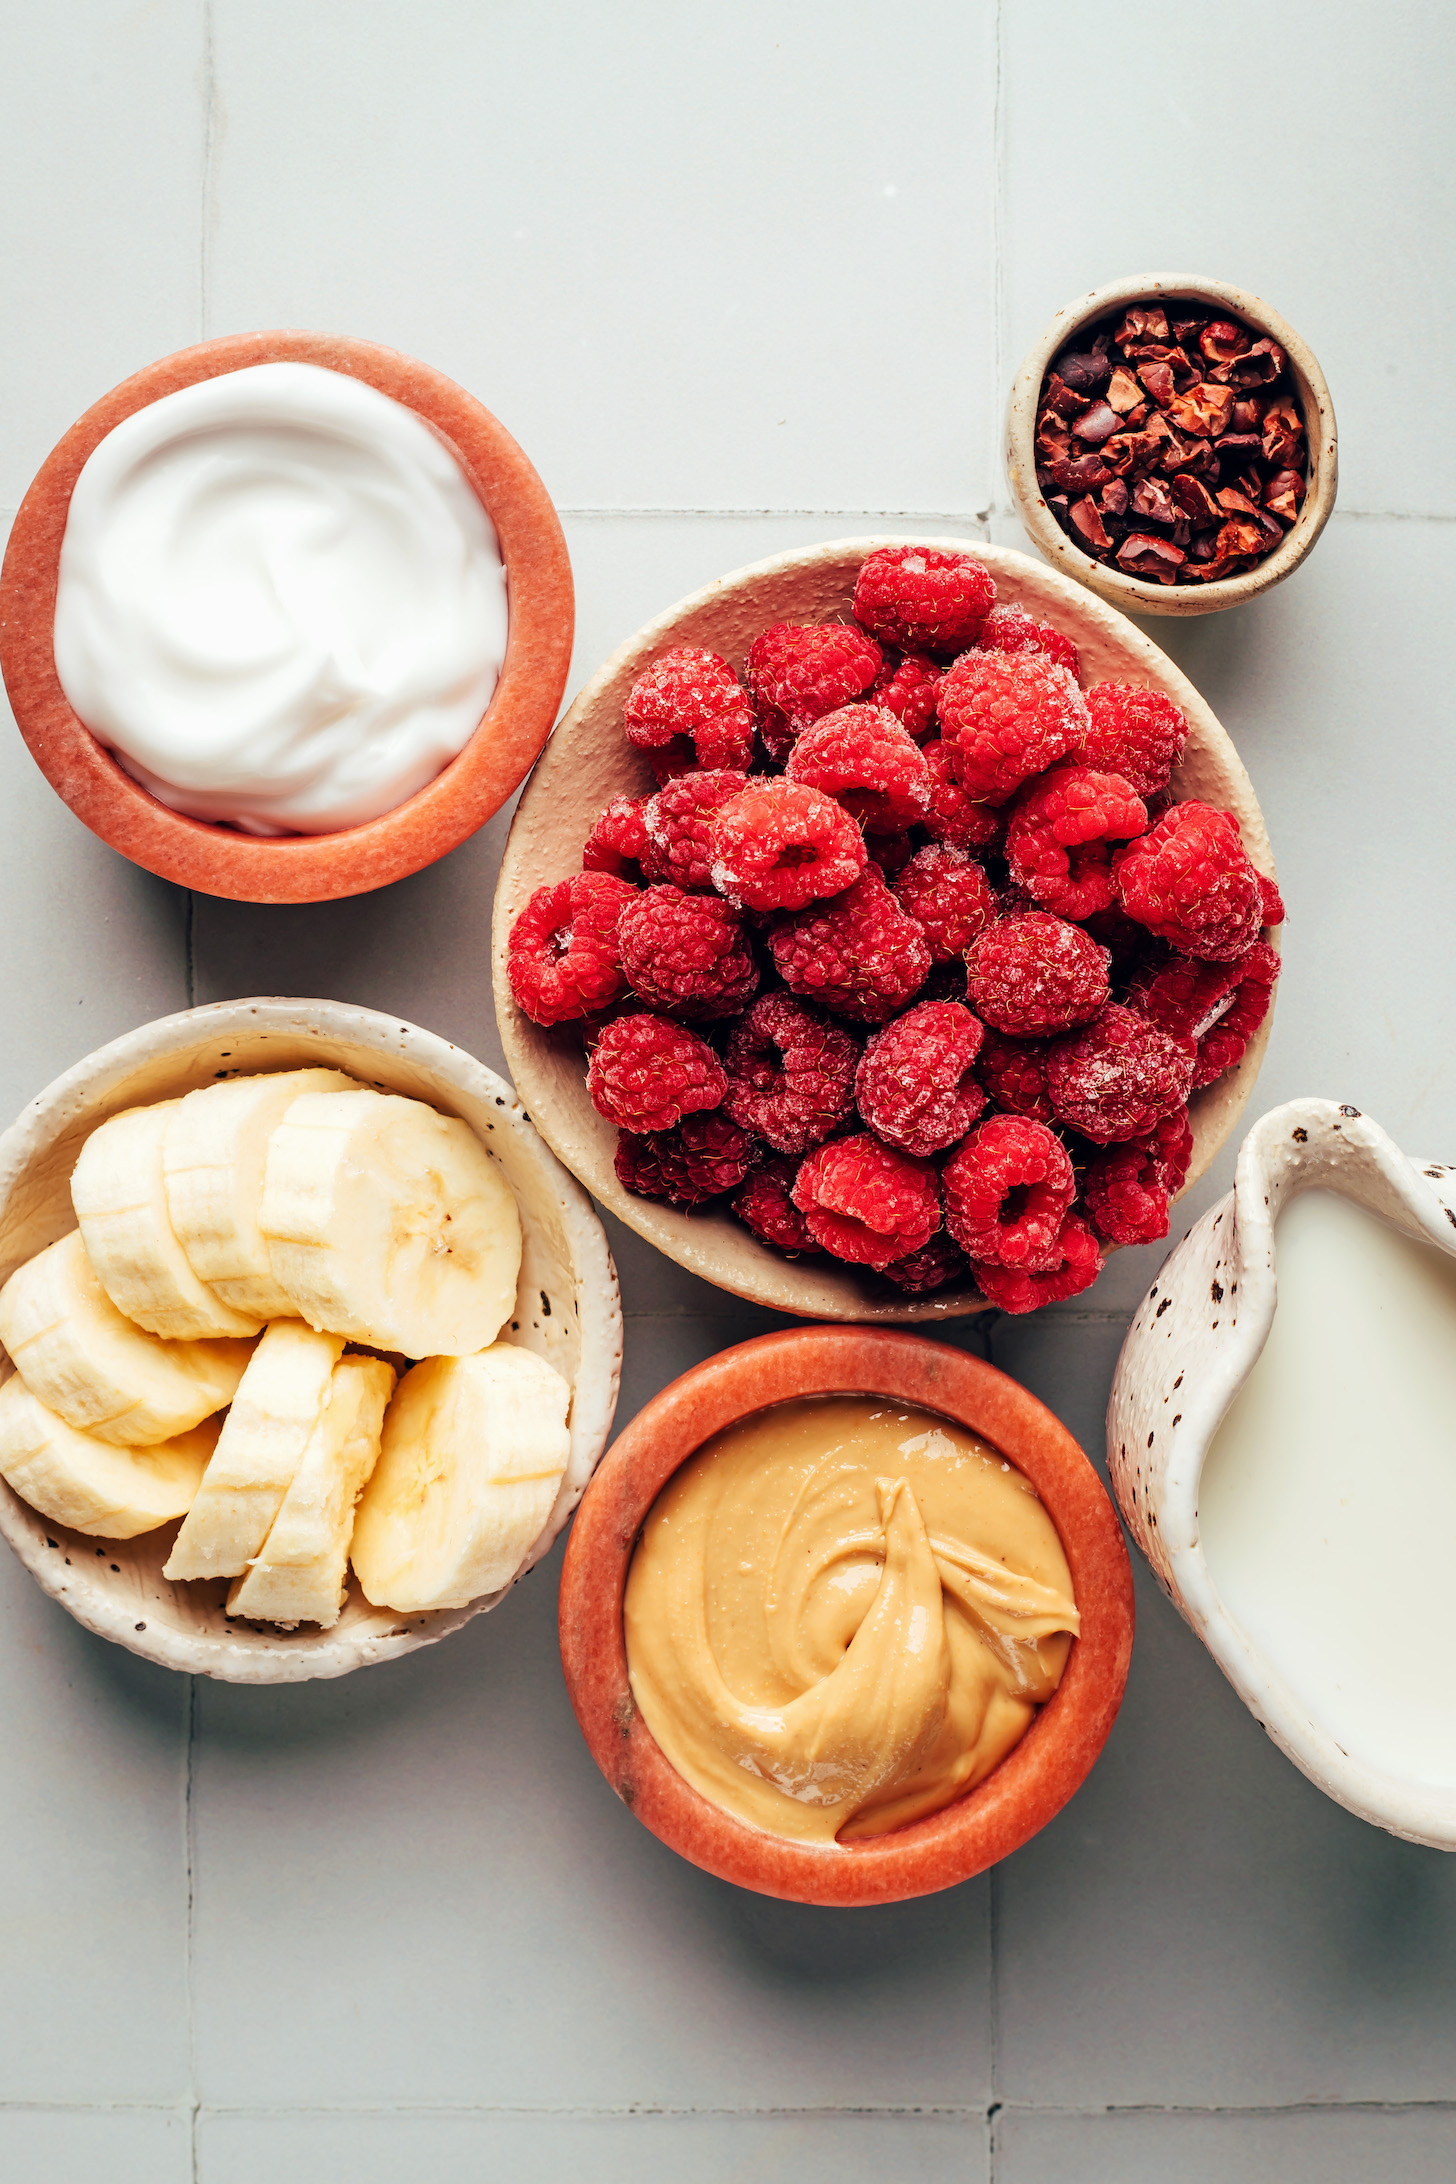 Dairy-free yogurt, banana, cashew butter, dairy-free milk, raspberries, and cacao nibs